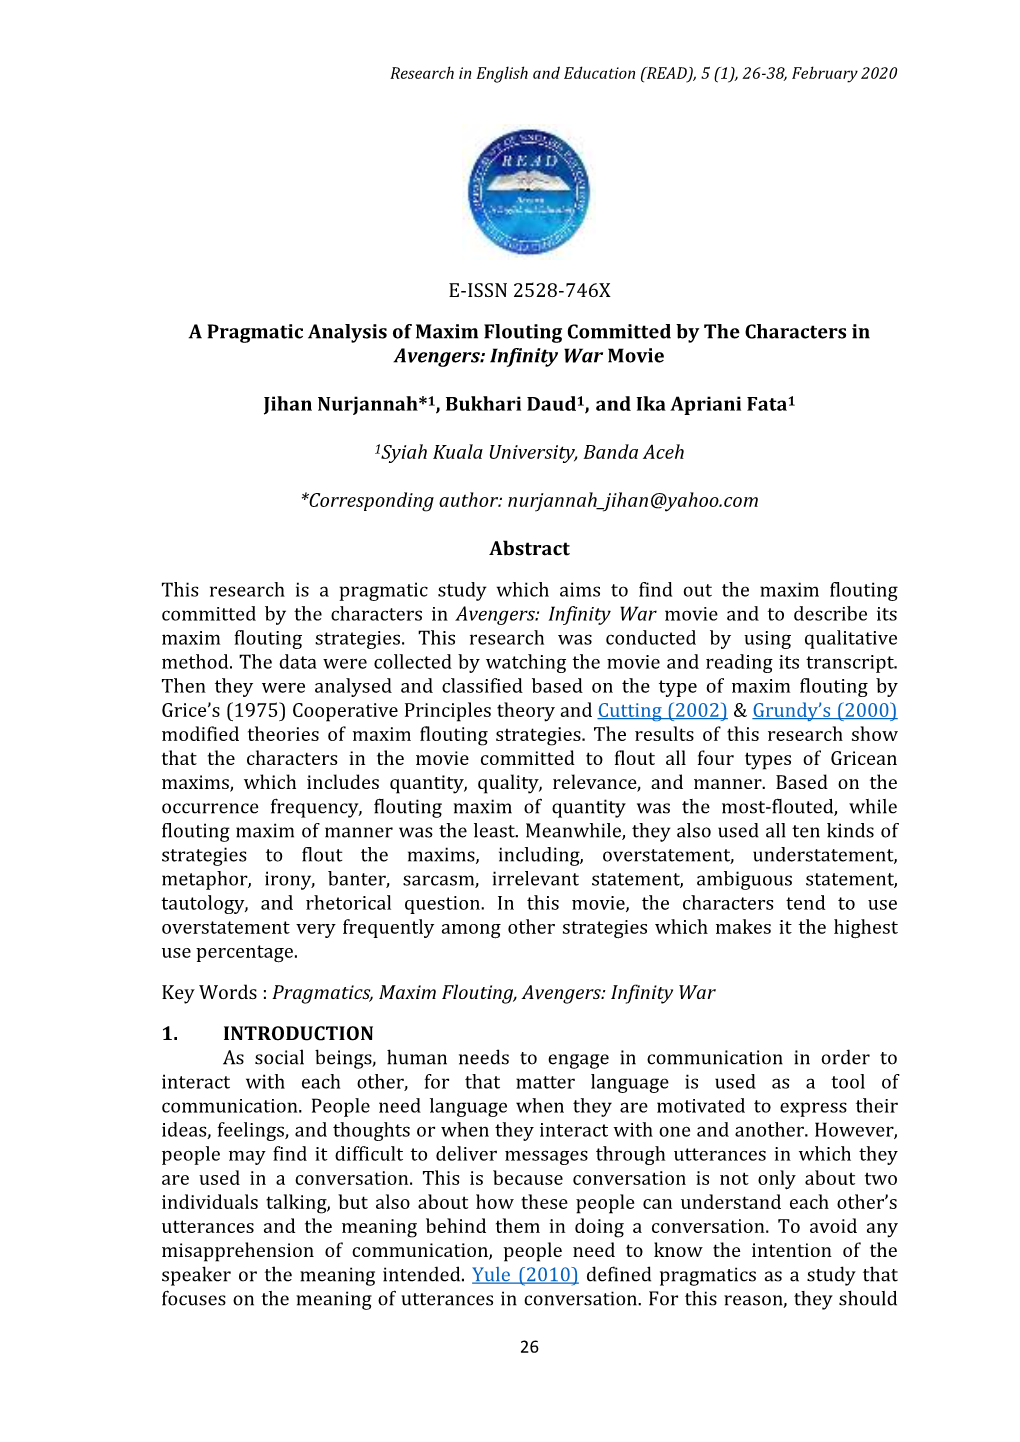 E-ISSN 2528-746X a Pragmatic Analysis of Maxim Flouting